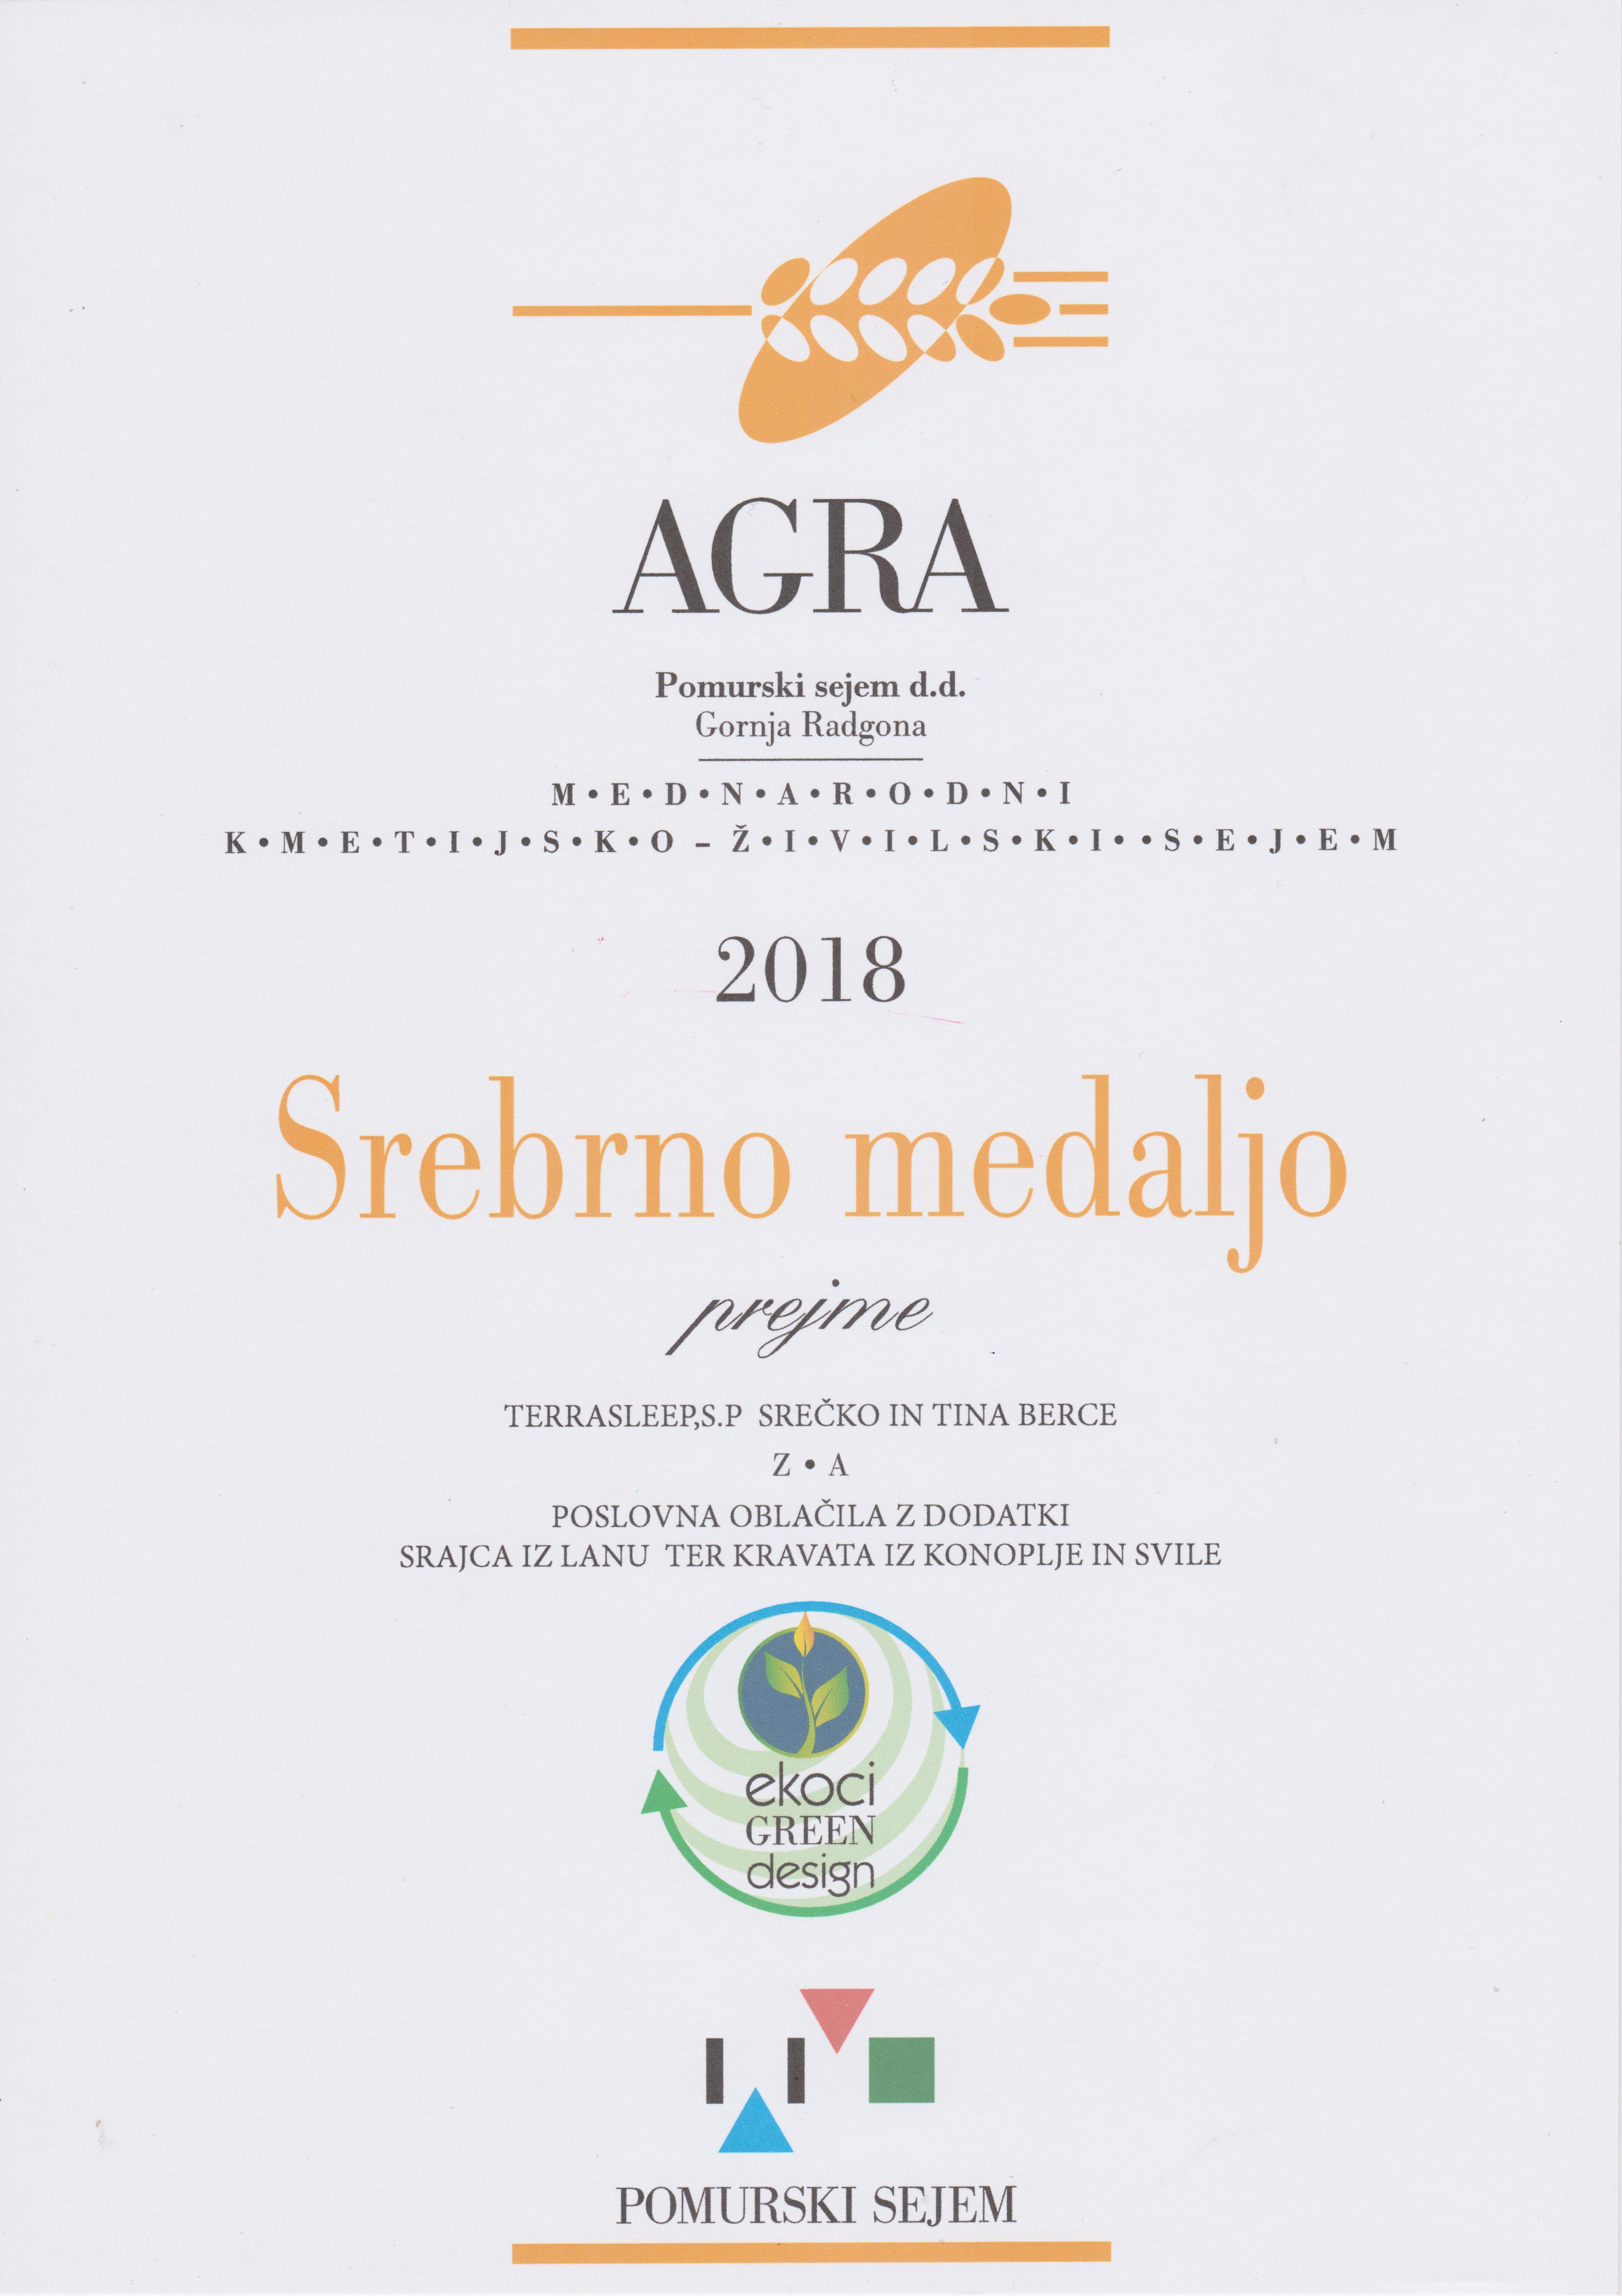 Srebrna medalja AGRA 2018 - poslovna oblačila z dodatki